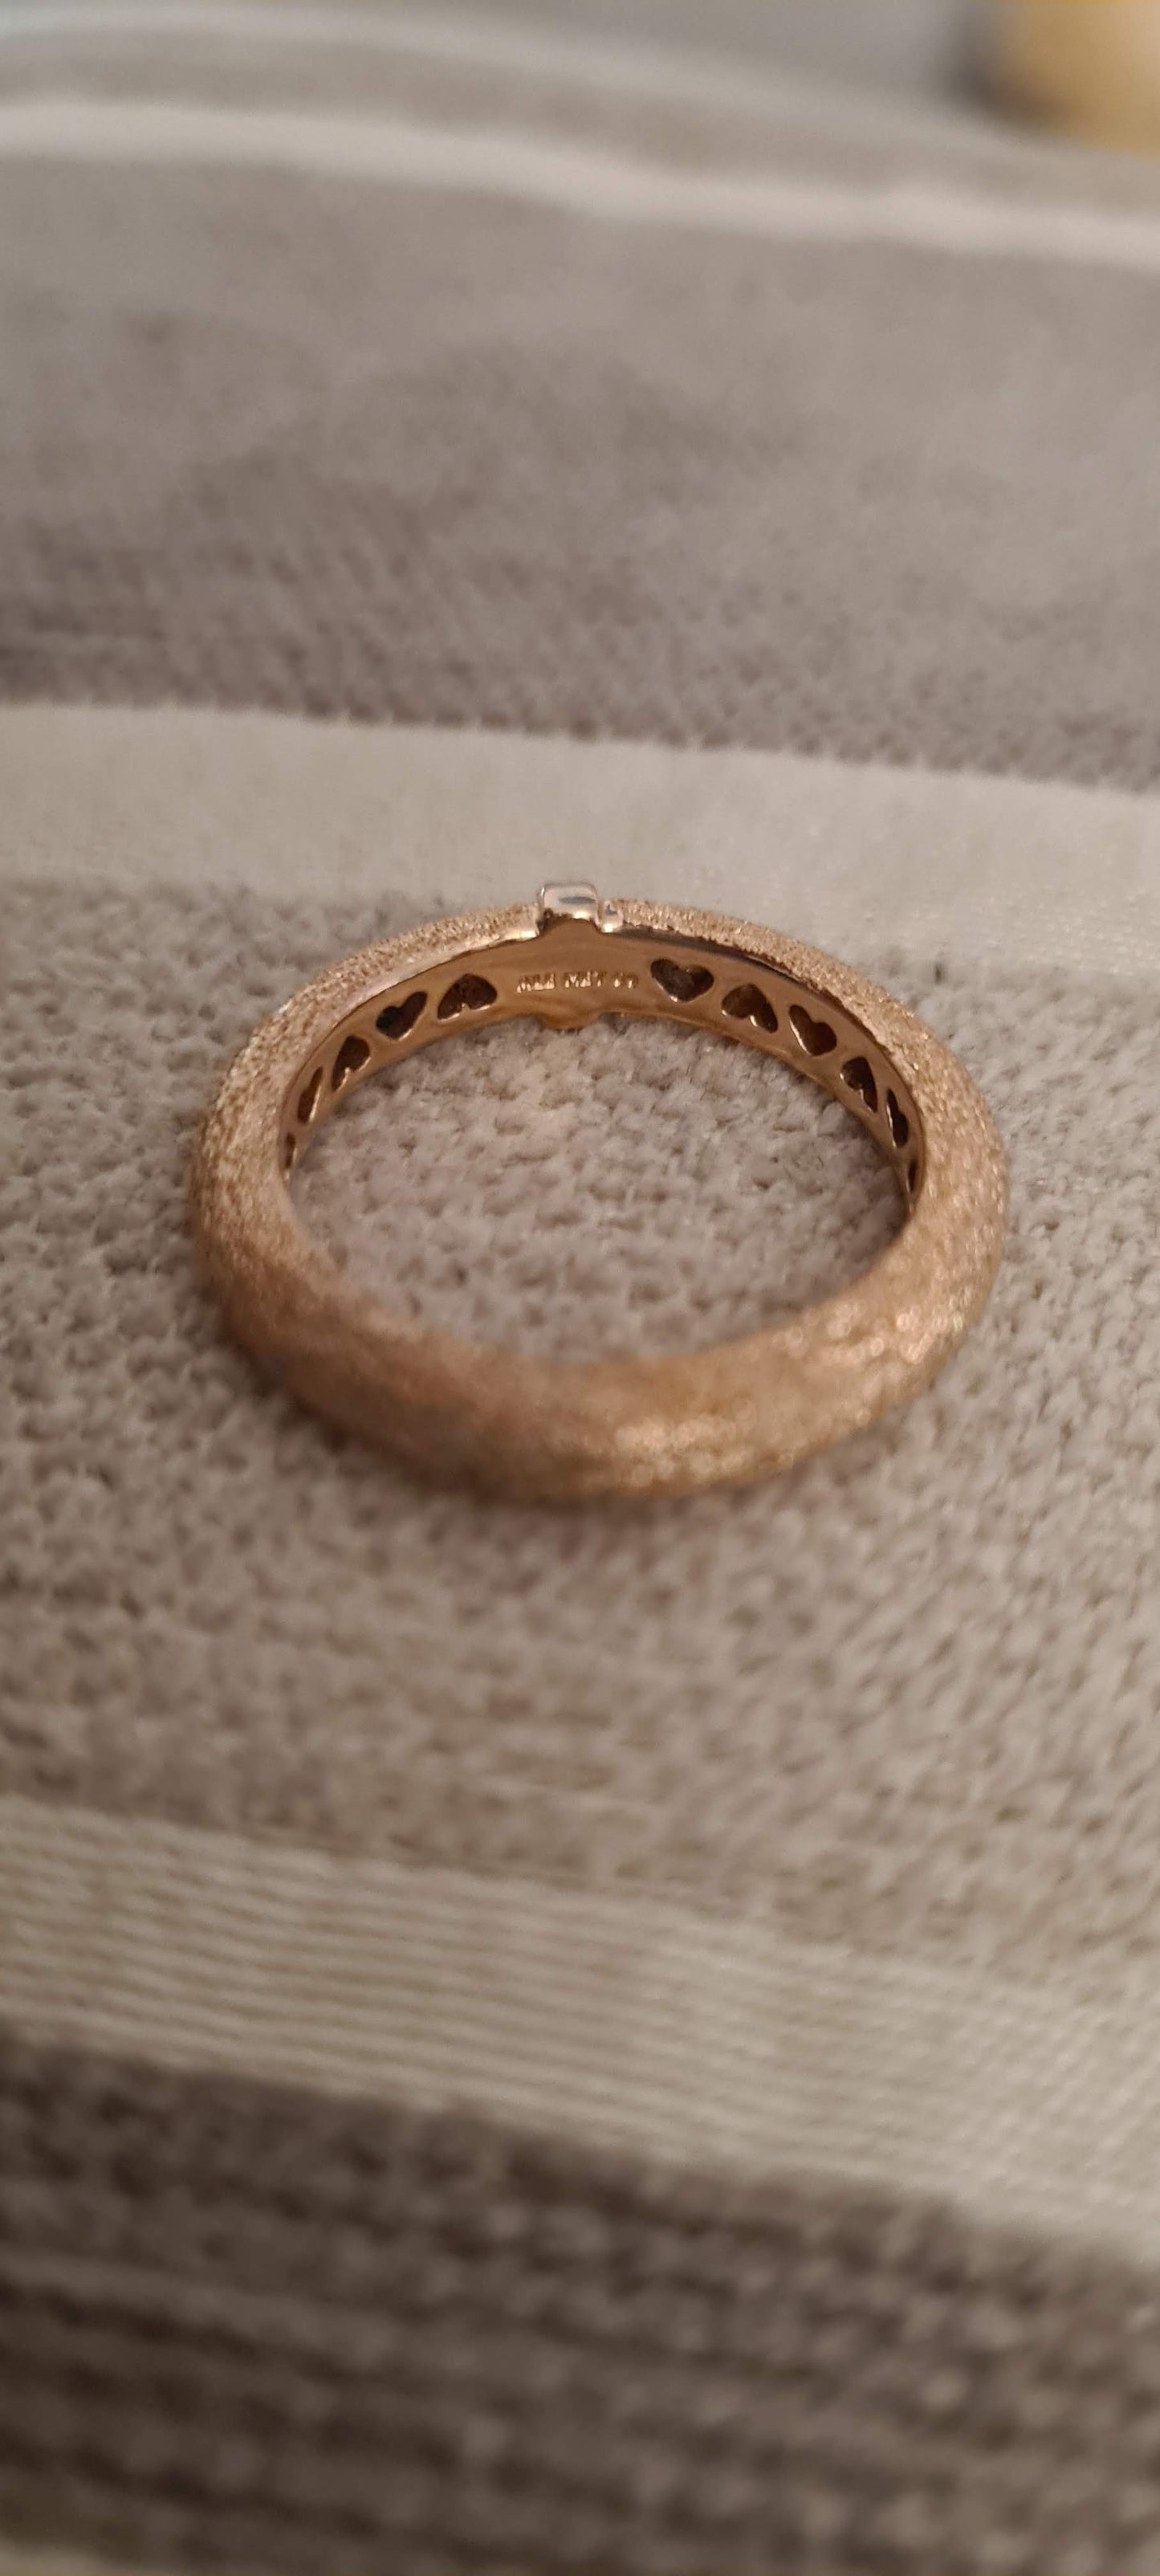 Genuine Pandora Ring Rose Gold Statement Ring Size 50